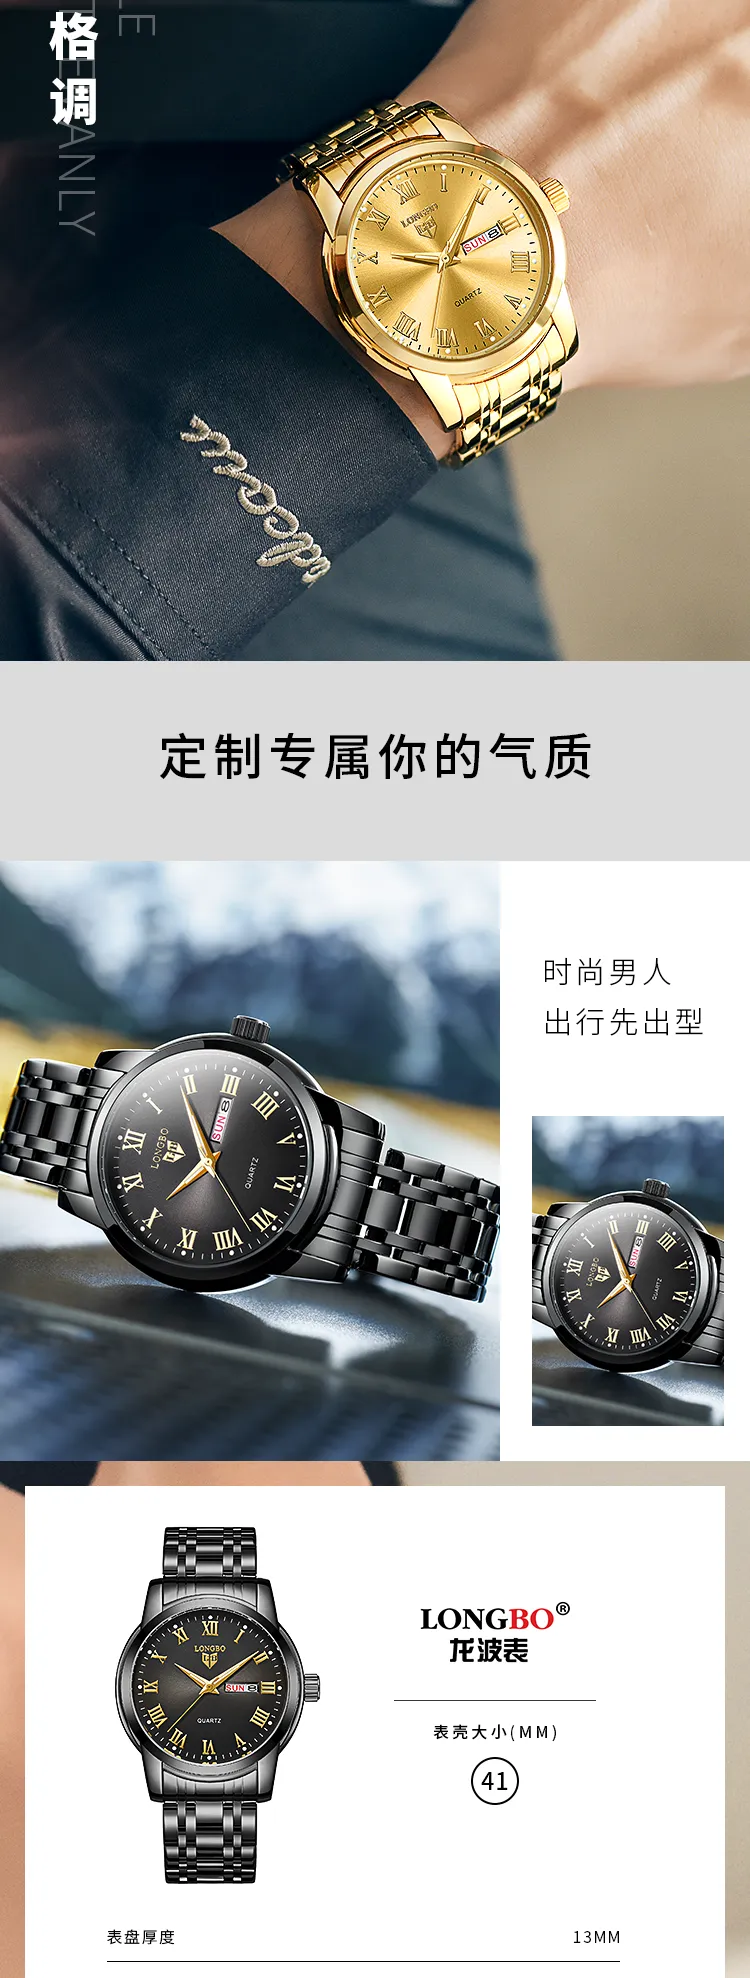 Longbo Men's Watch 83055